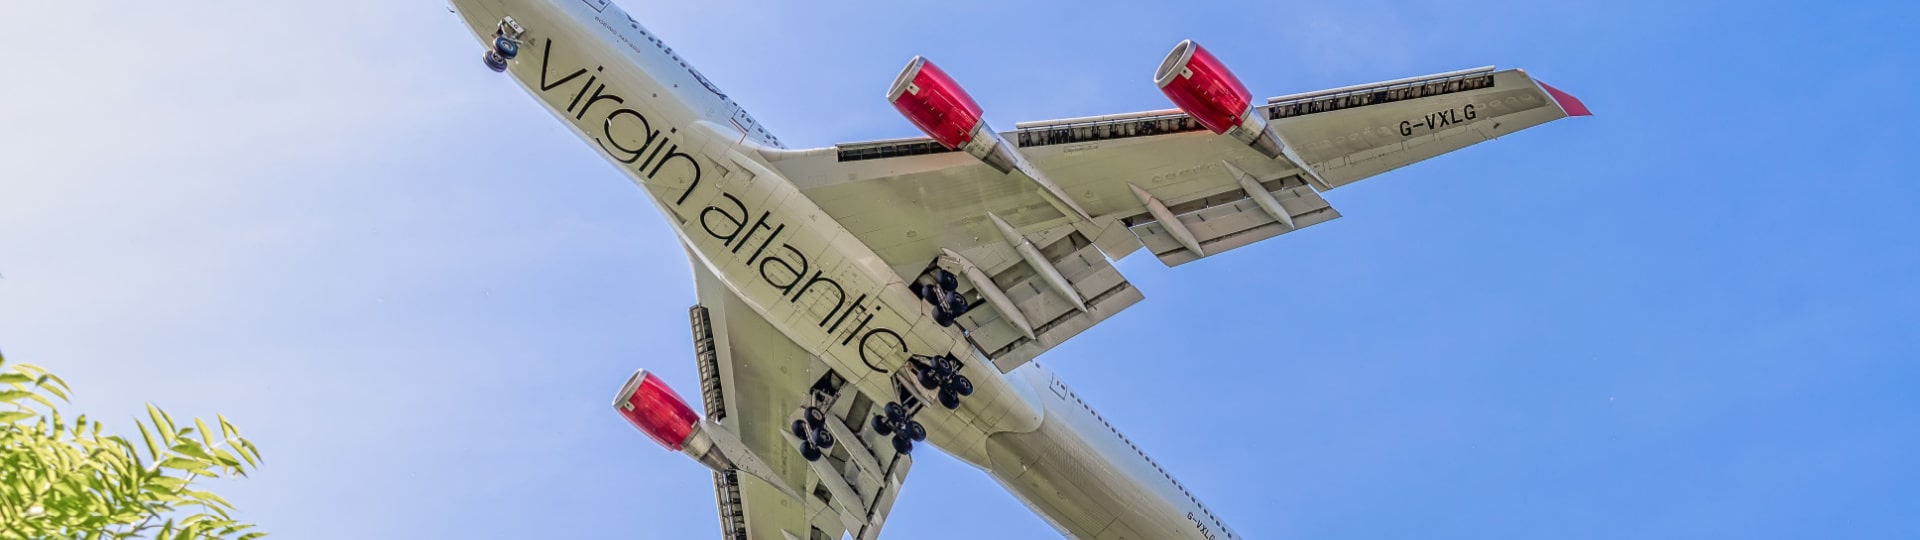 Z Londýna odstartoval první let Virgin Atlantic poháněný jen udržitelným palivem